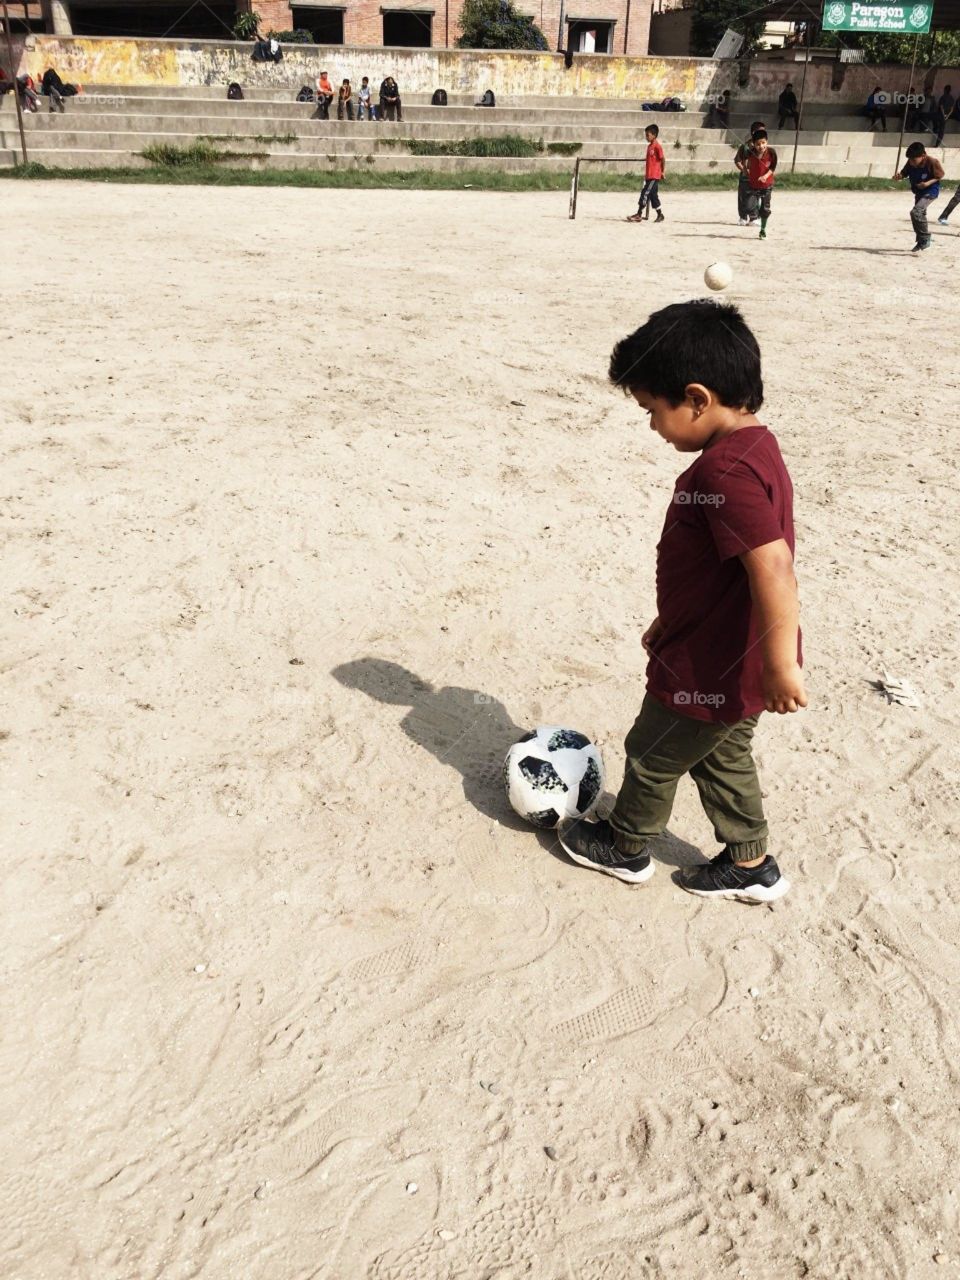 Kids enjoying soccer